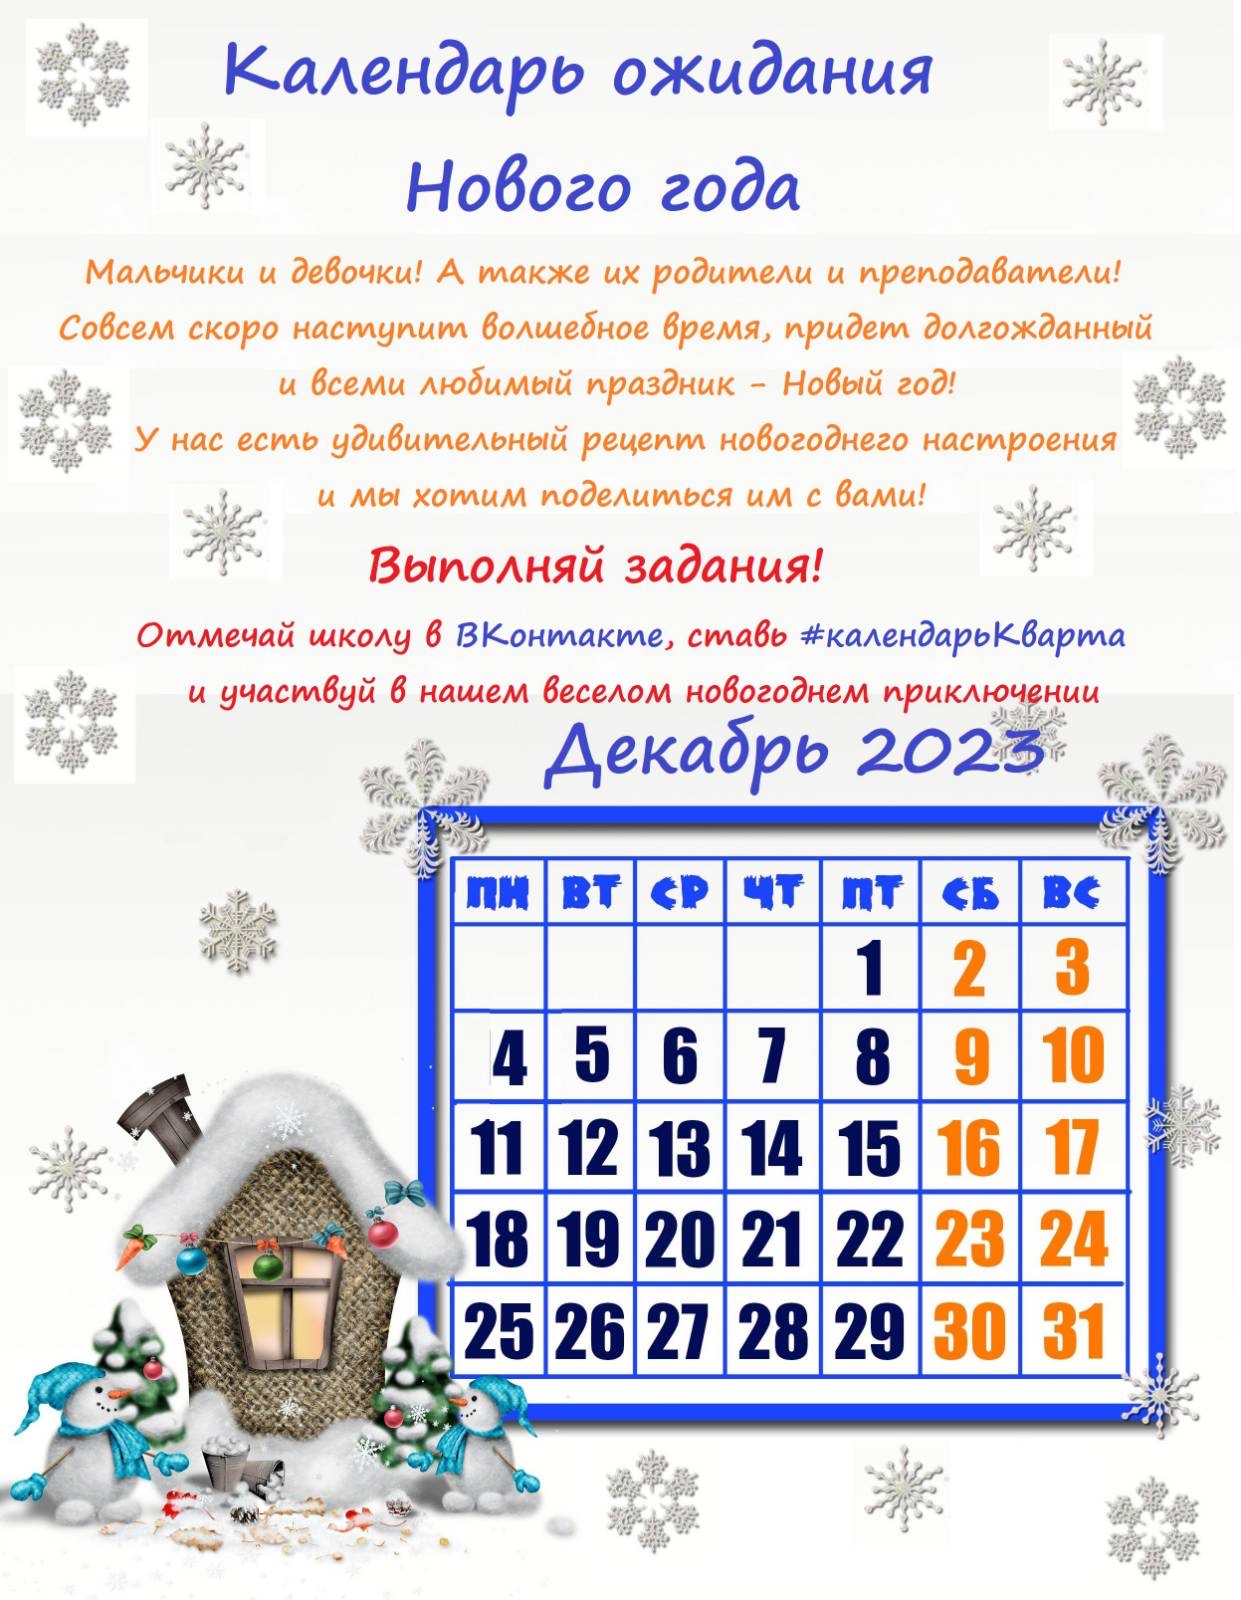 Календарь ожидания Нового года